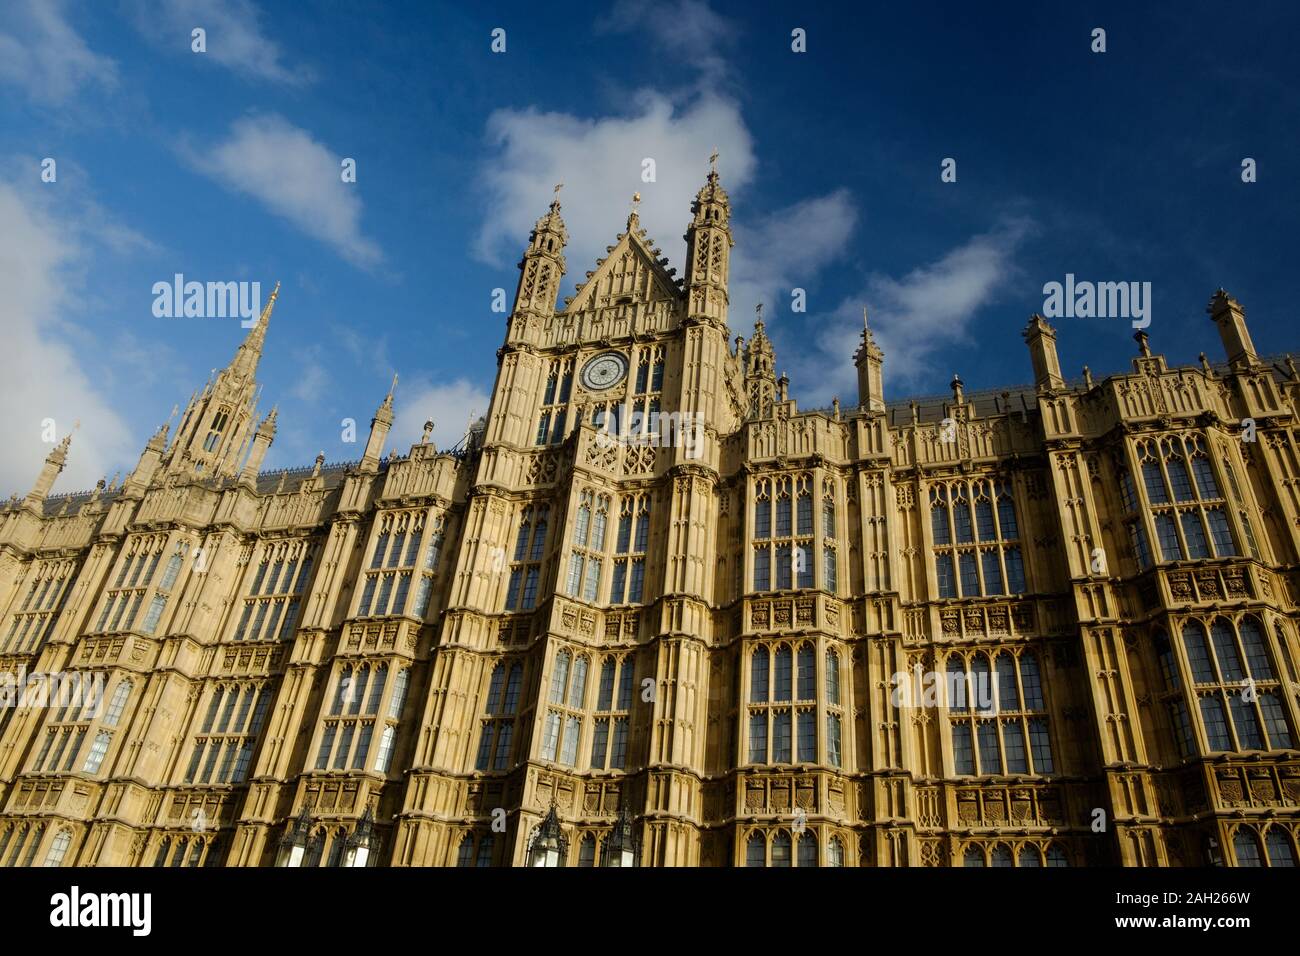 Die Fassade der Palast von Westminster ist eine architektonische Perle. Dies ist eines der Wahrzeichen von London. Stockfoto